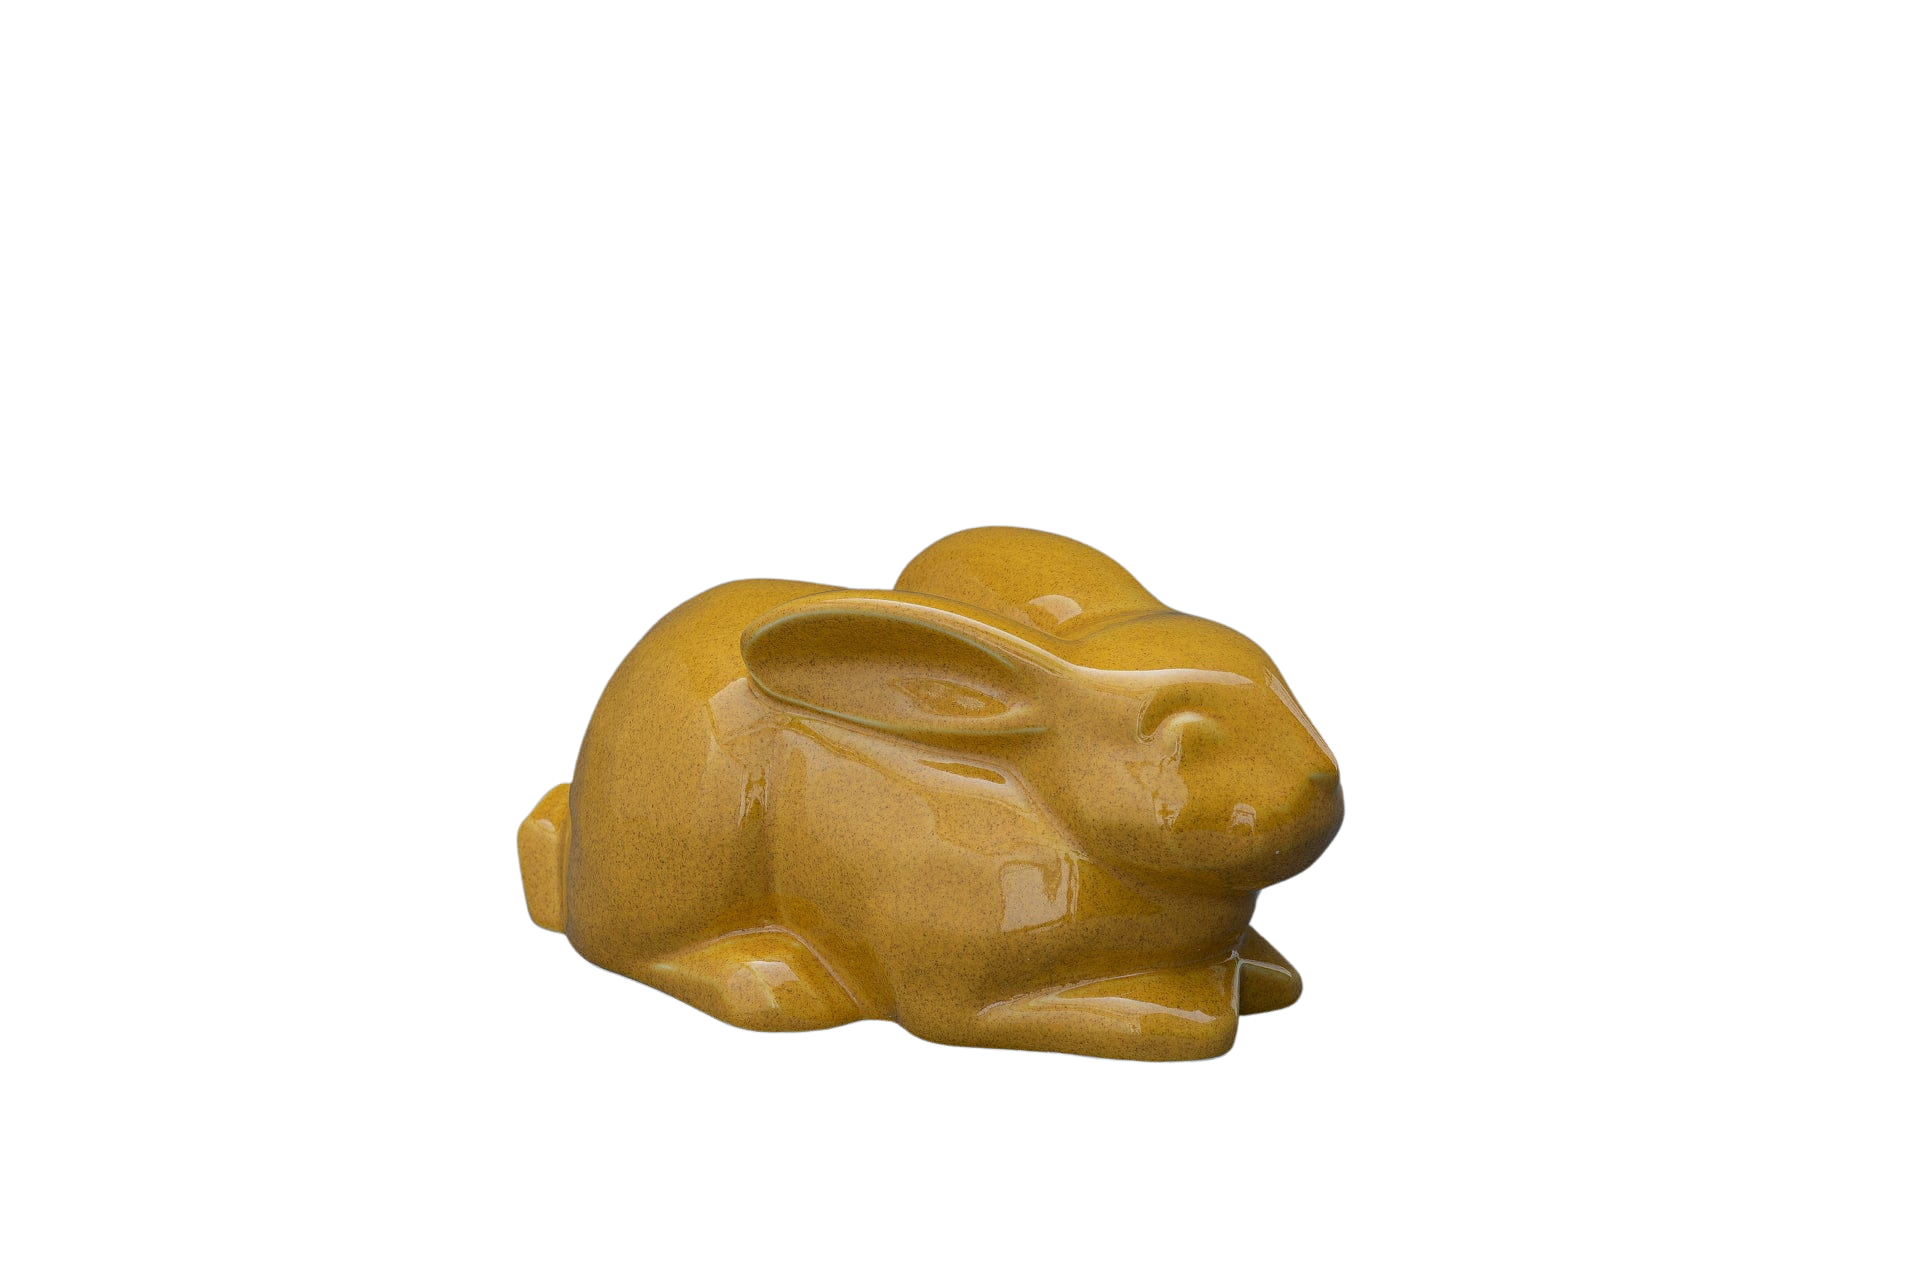 Pet urn rabbit ceramic